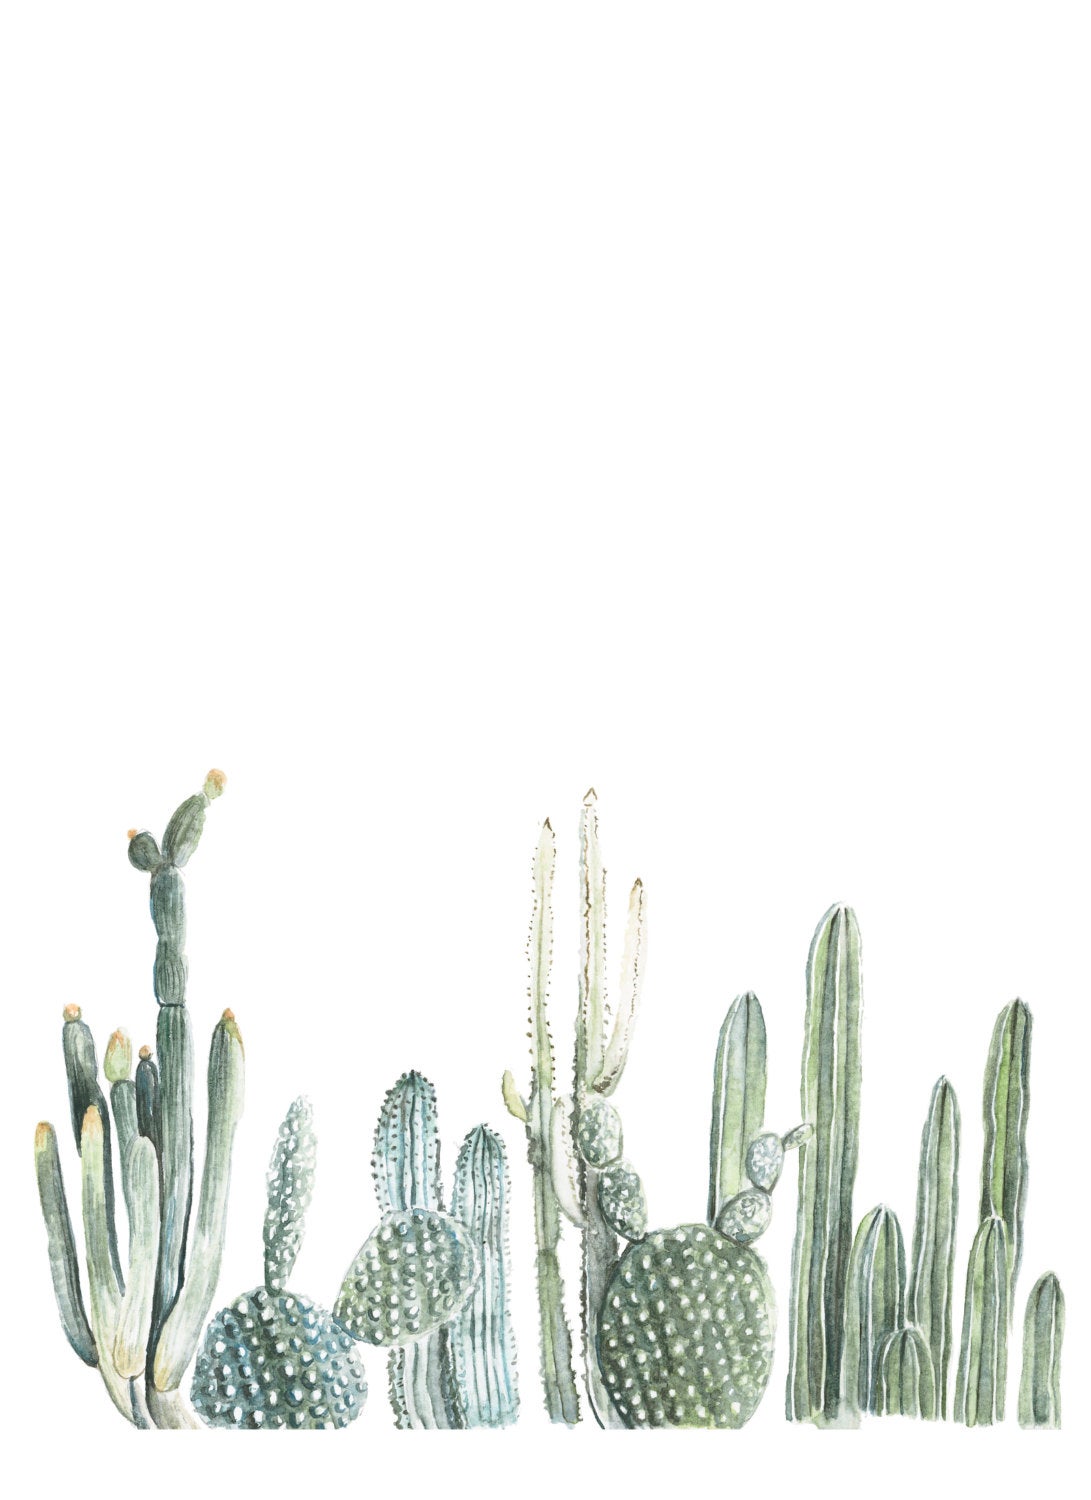 watercolor cactus wallpaper,cactus,saguaro,plant,flower,botany